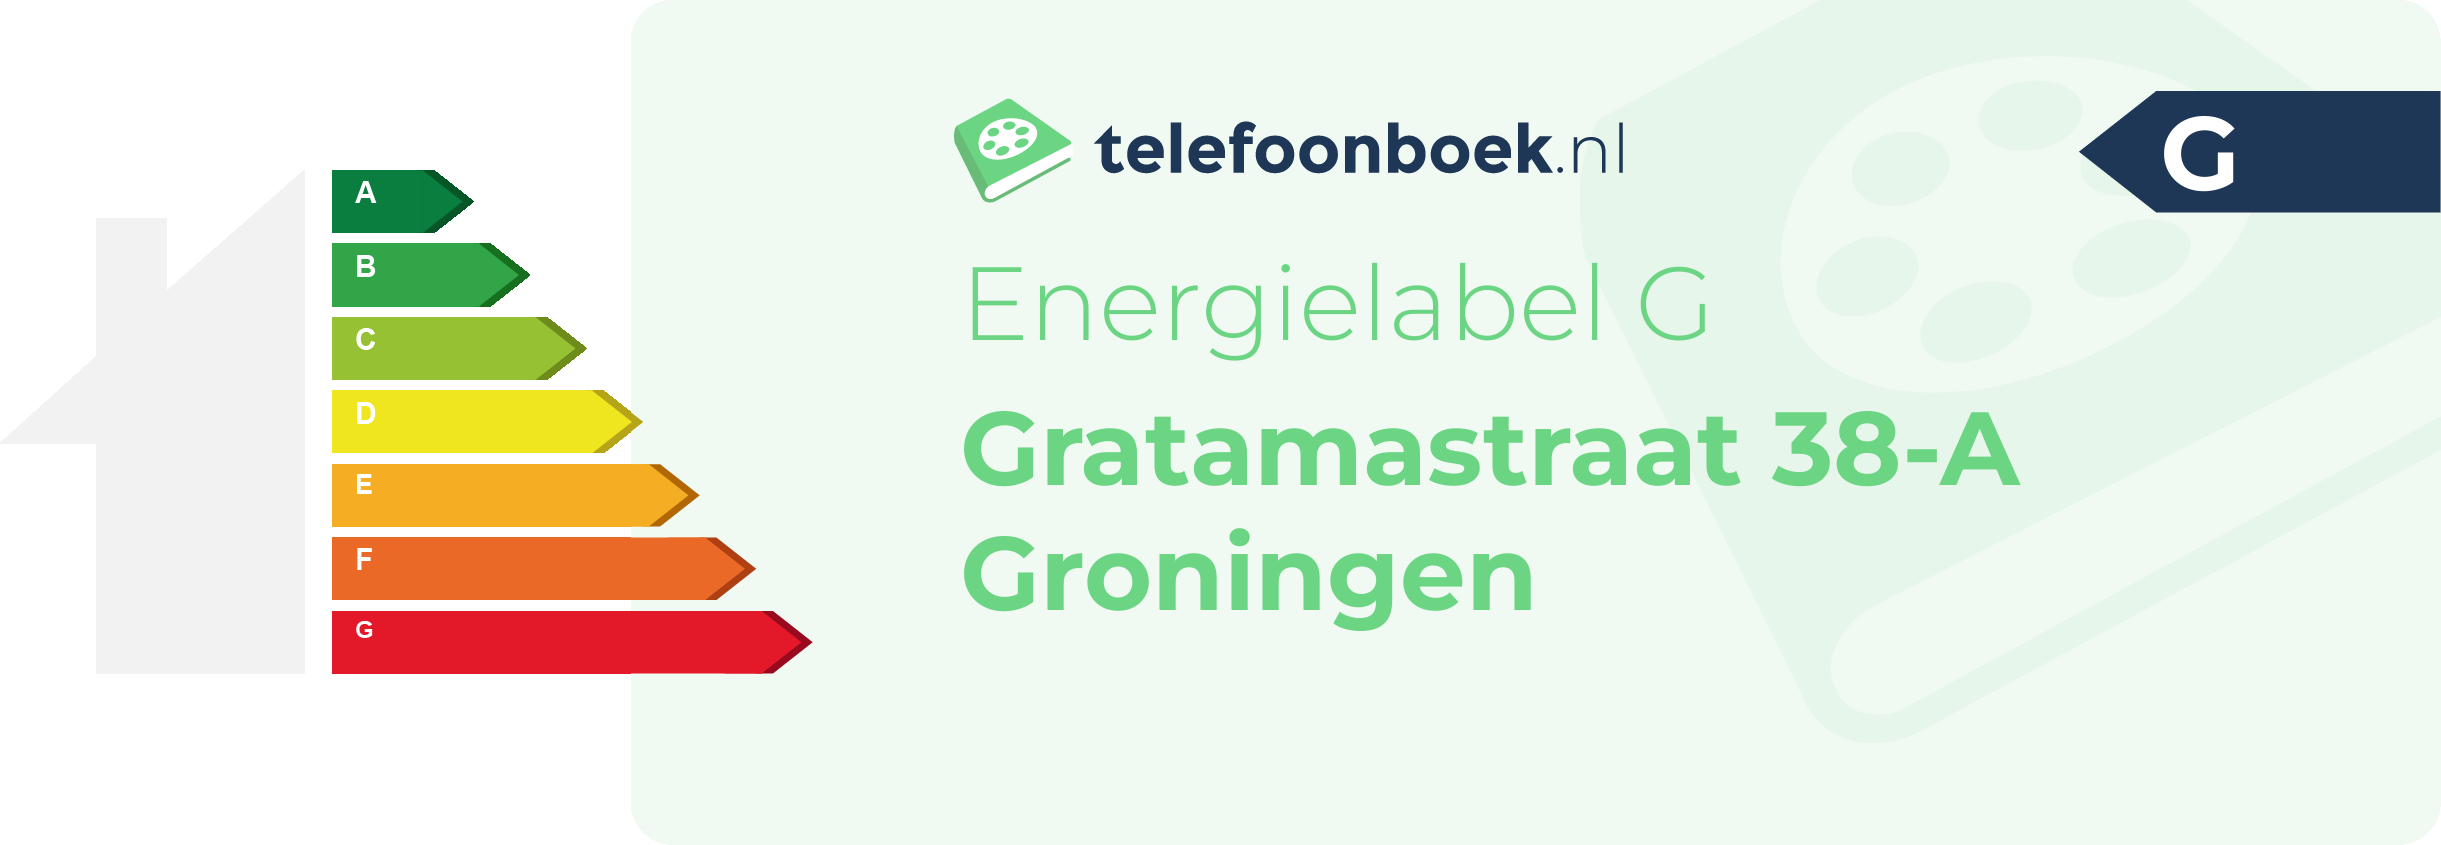 Energielabel Gratamastraat 38-A Groningen